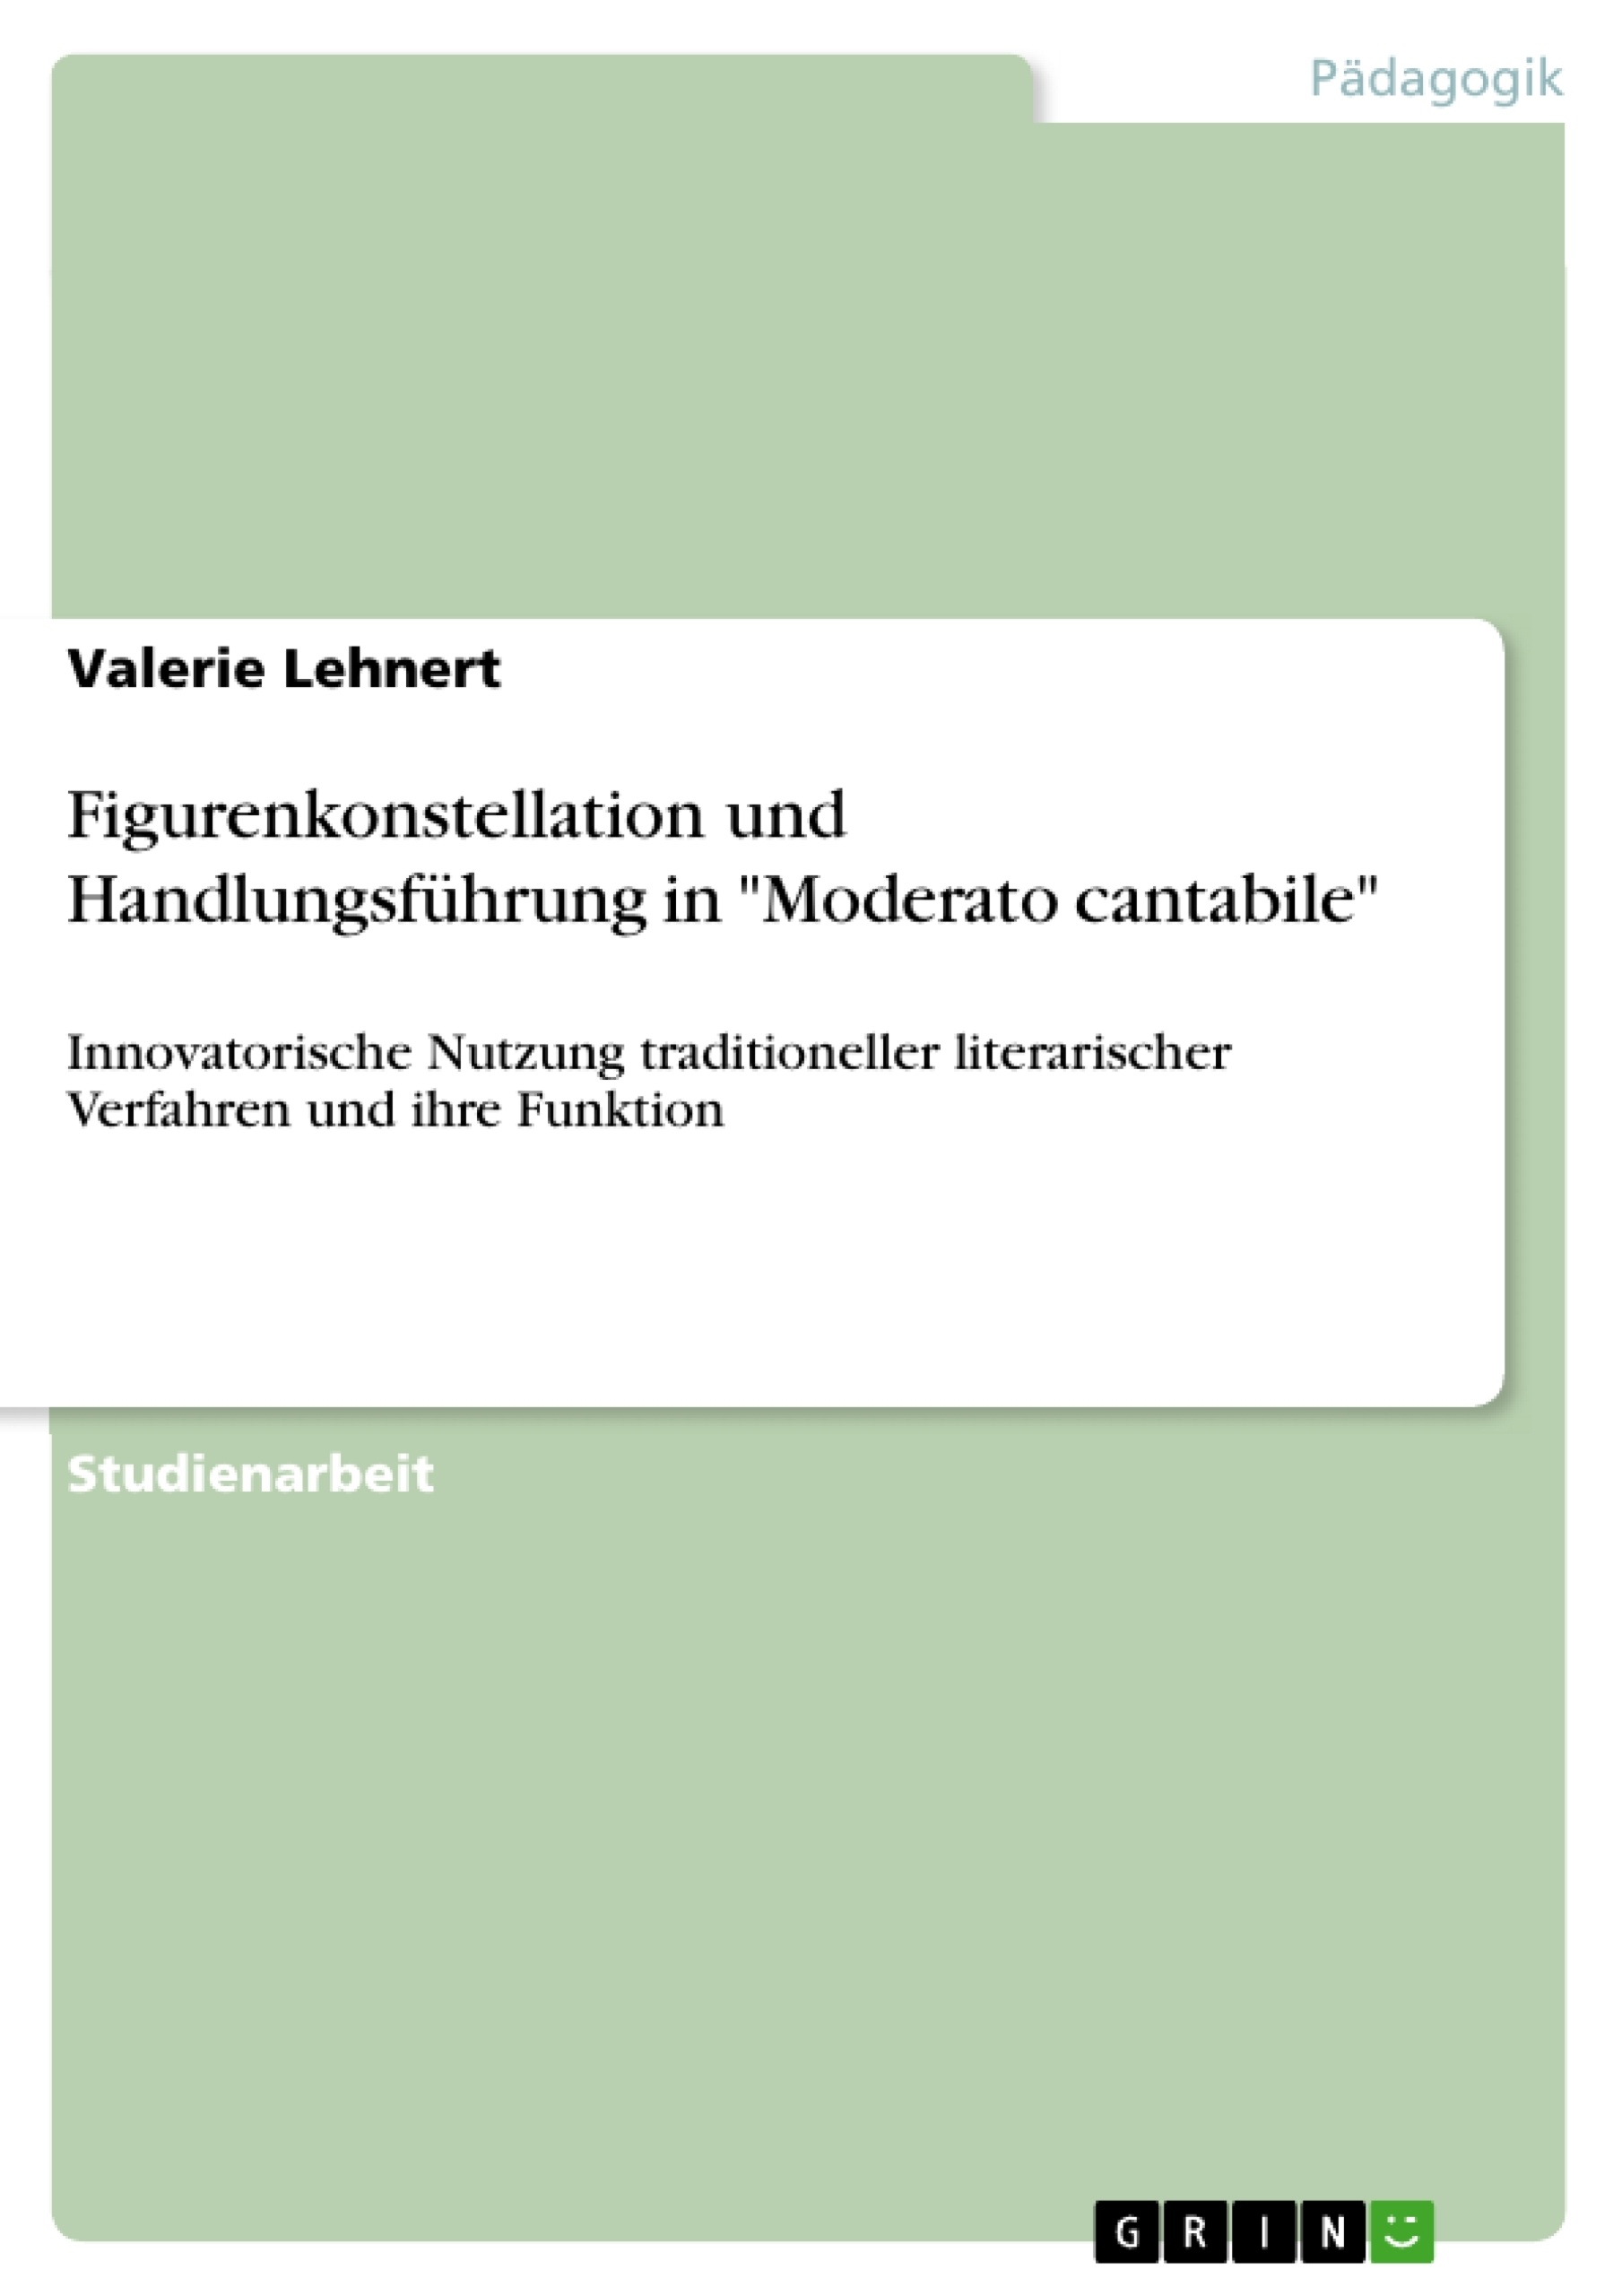 Title: Figurenkonstellation und Handlungsführung in "Moderato cantabile"